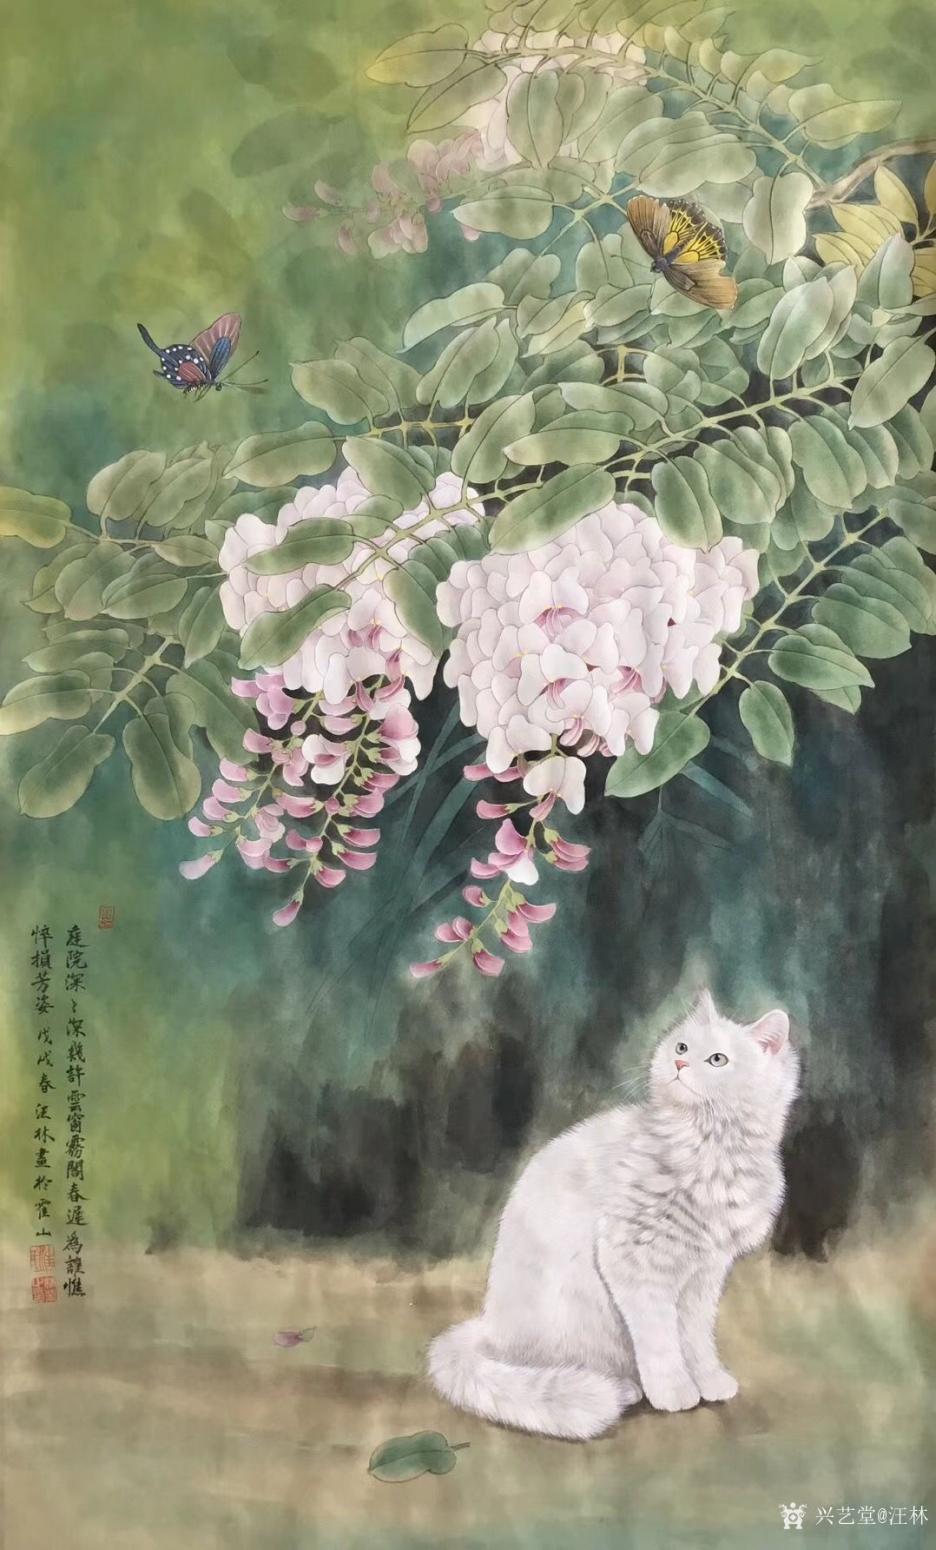 汪林国画作品《赏花观蝶》